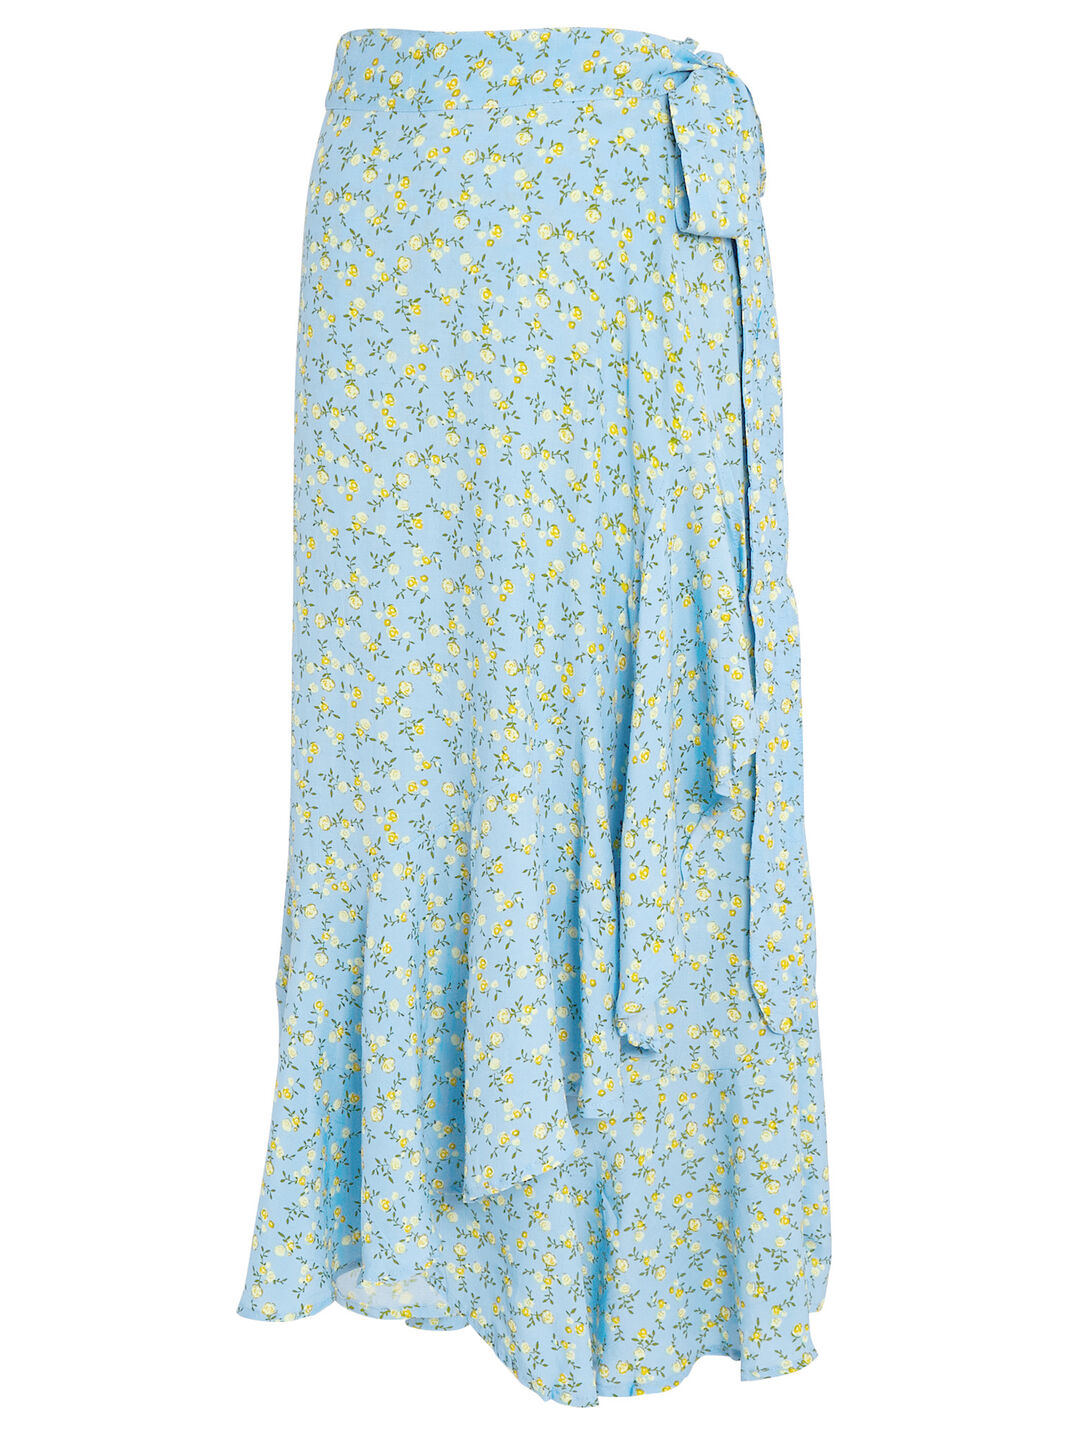 FAITHFULL THE BRAND Aubrie Floral Wrap Skirt | INTERMIX®